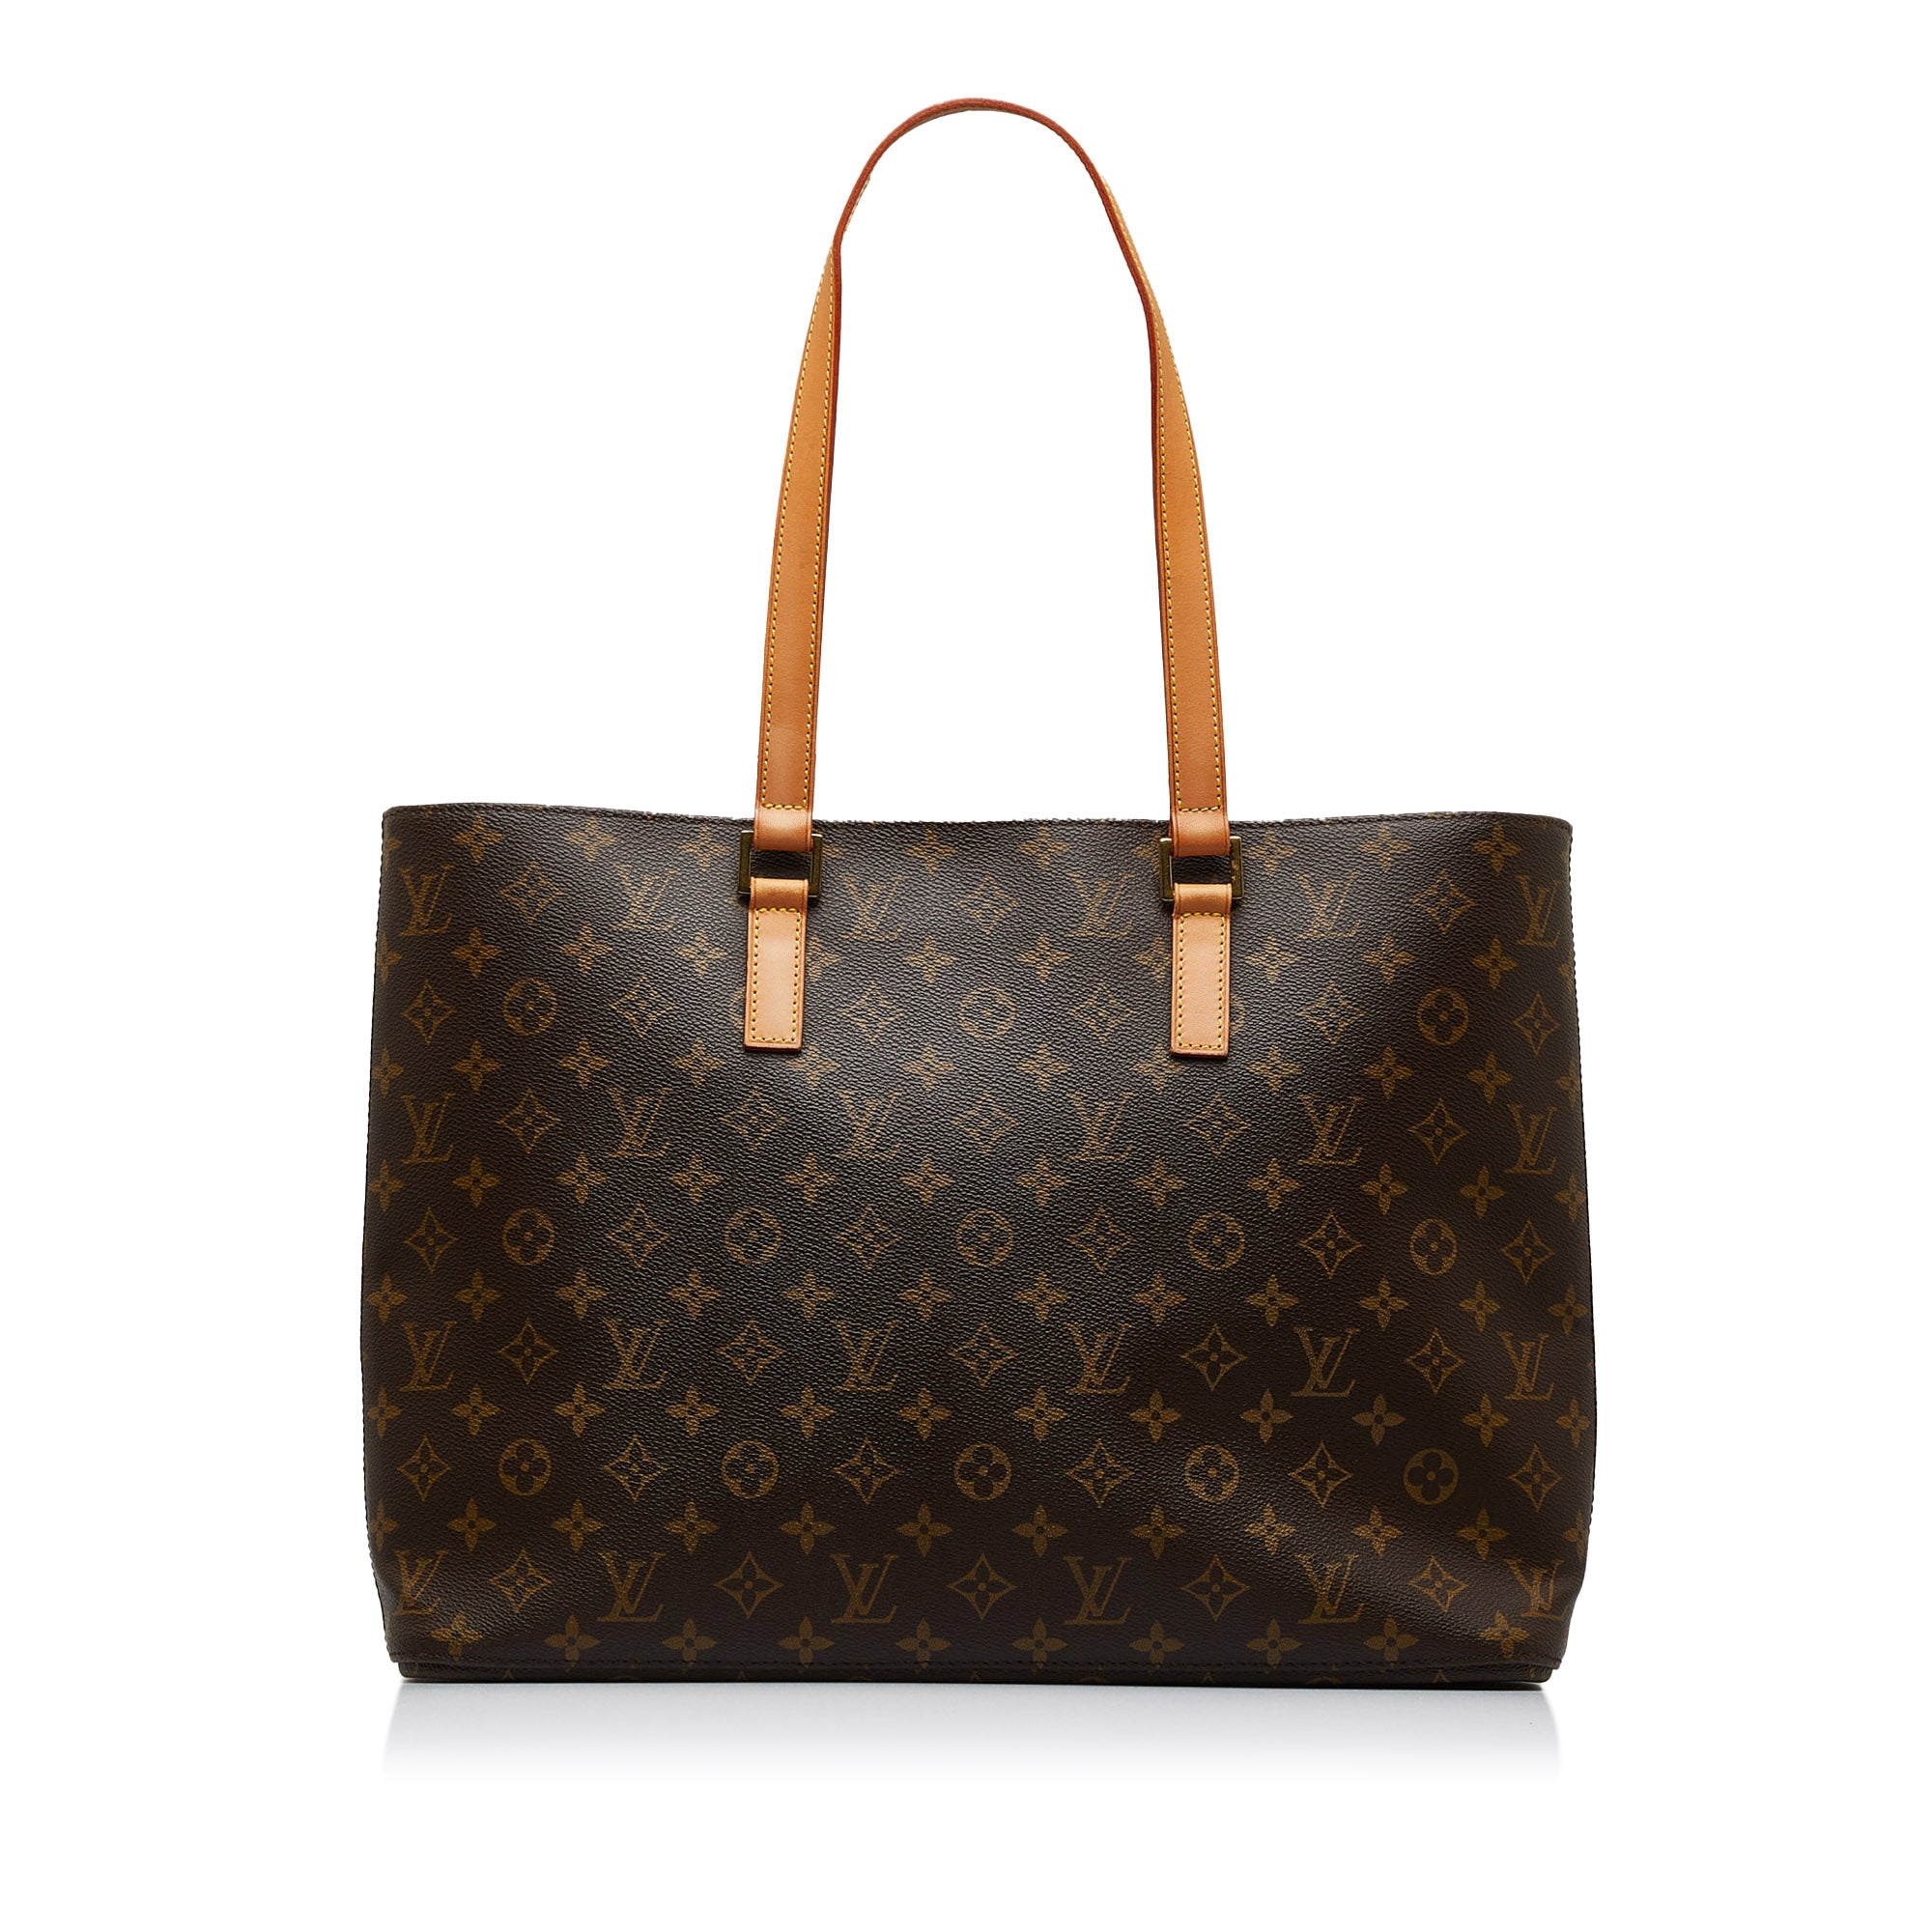 Brown Louis Vuitton Monogram Luco Tote Bag, AmaflightschoolShops Revival